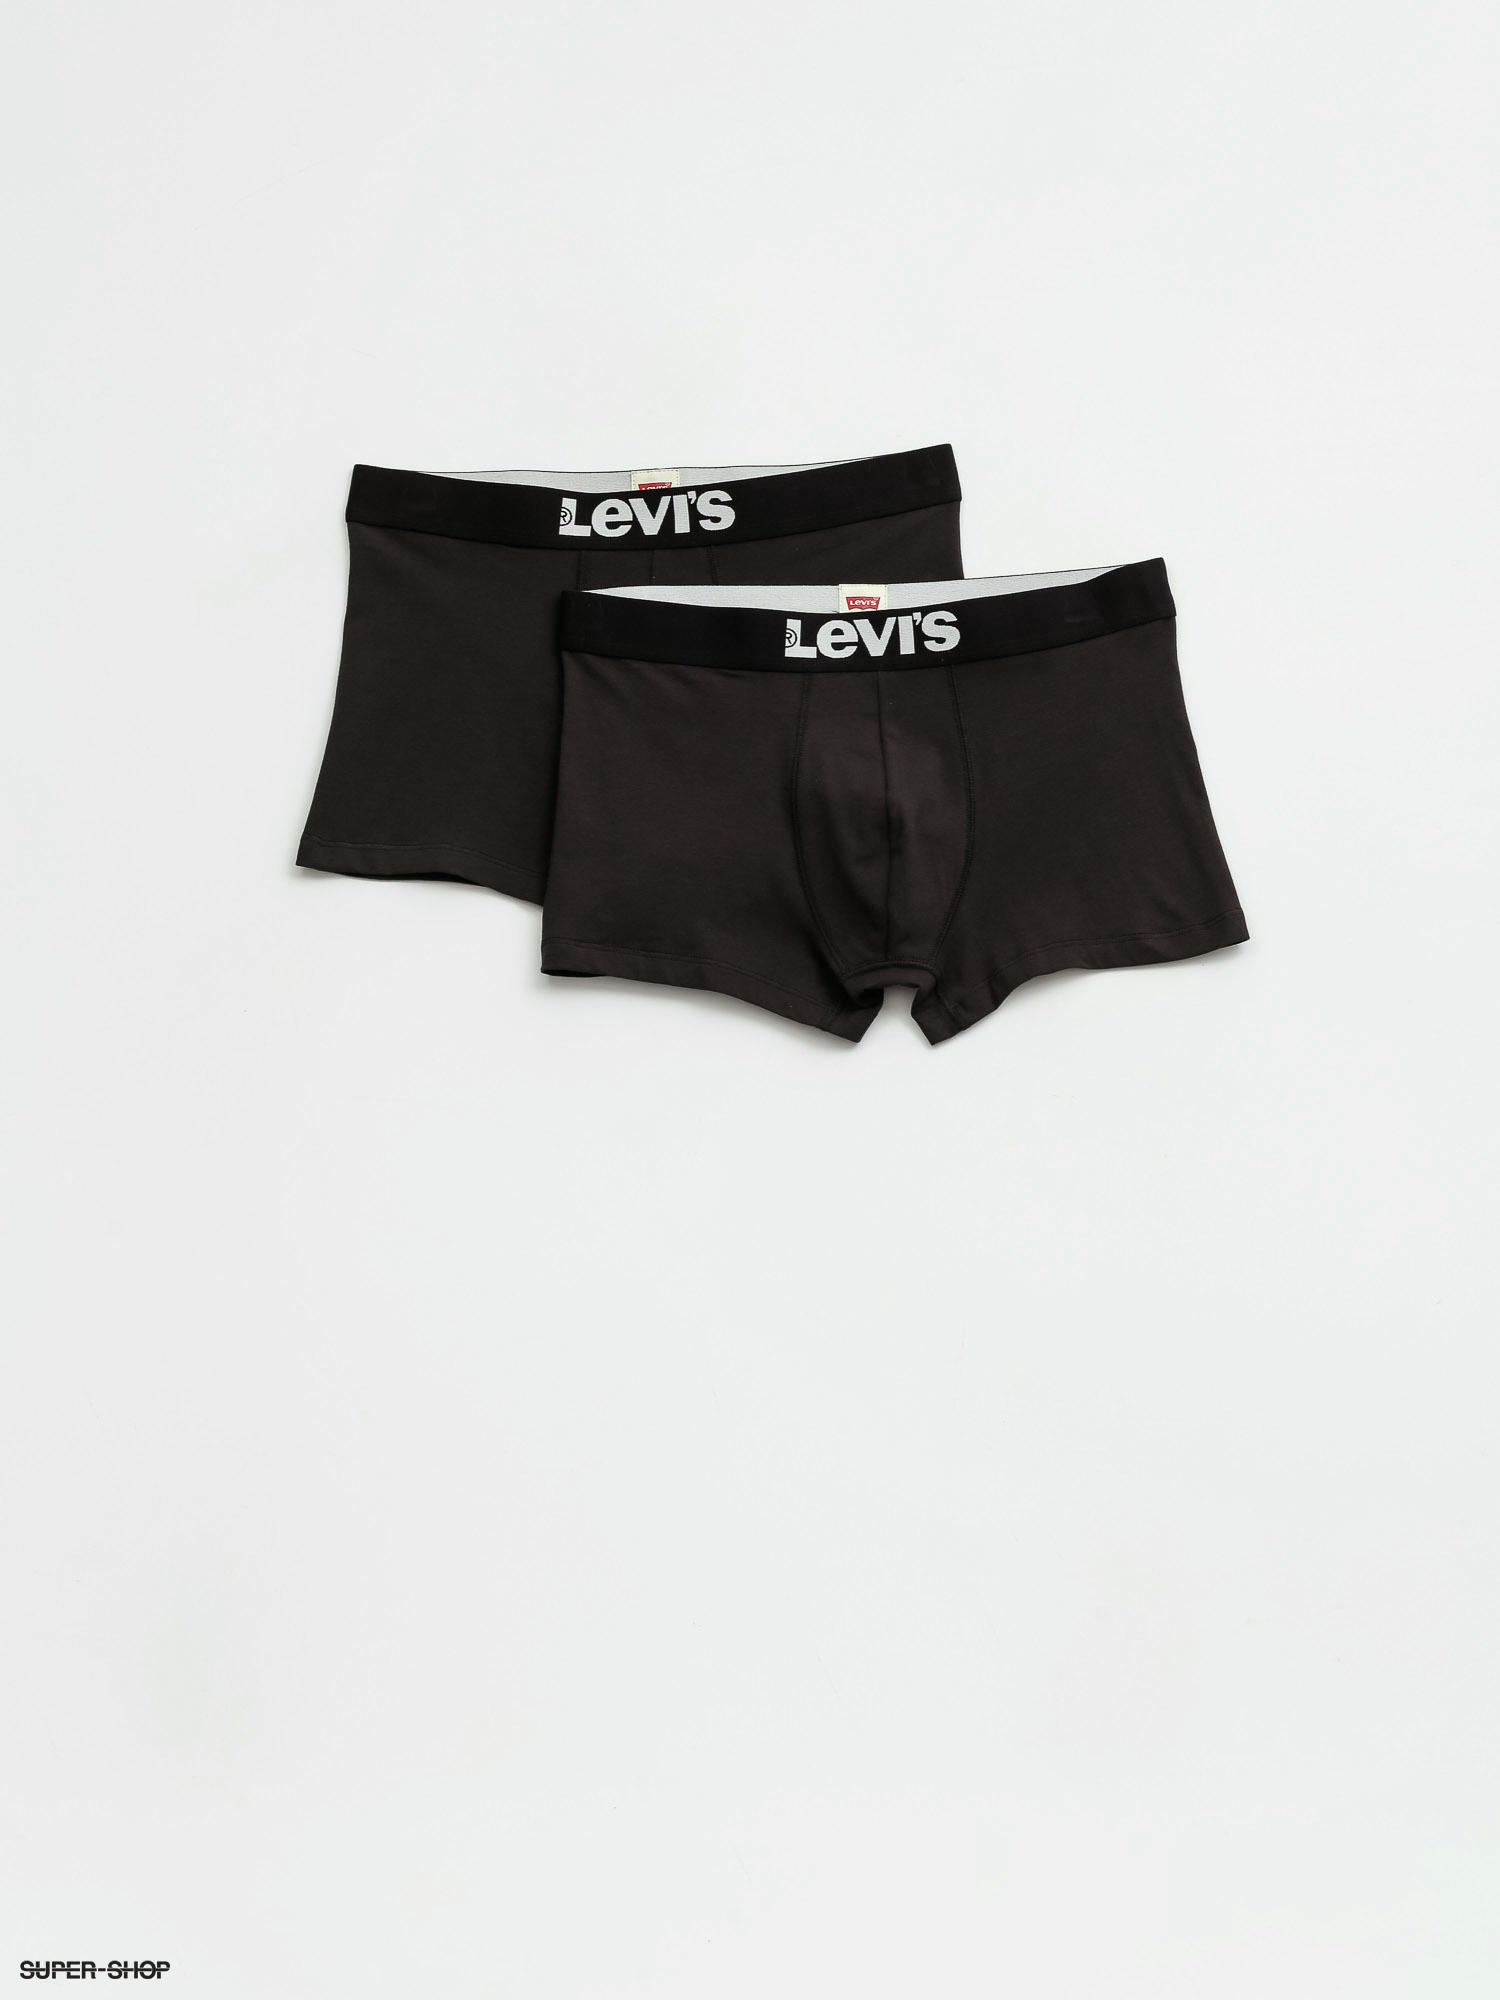 levis underwear trunks